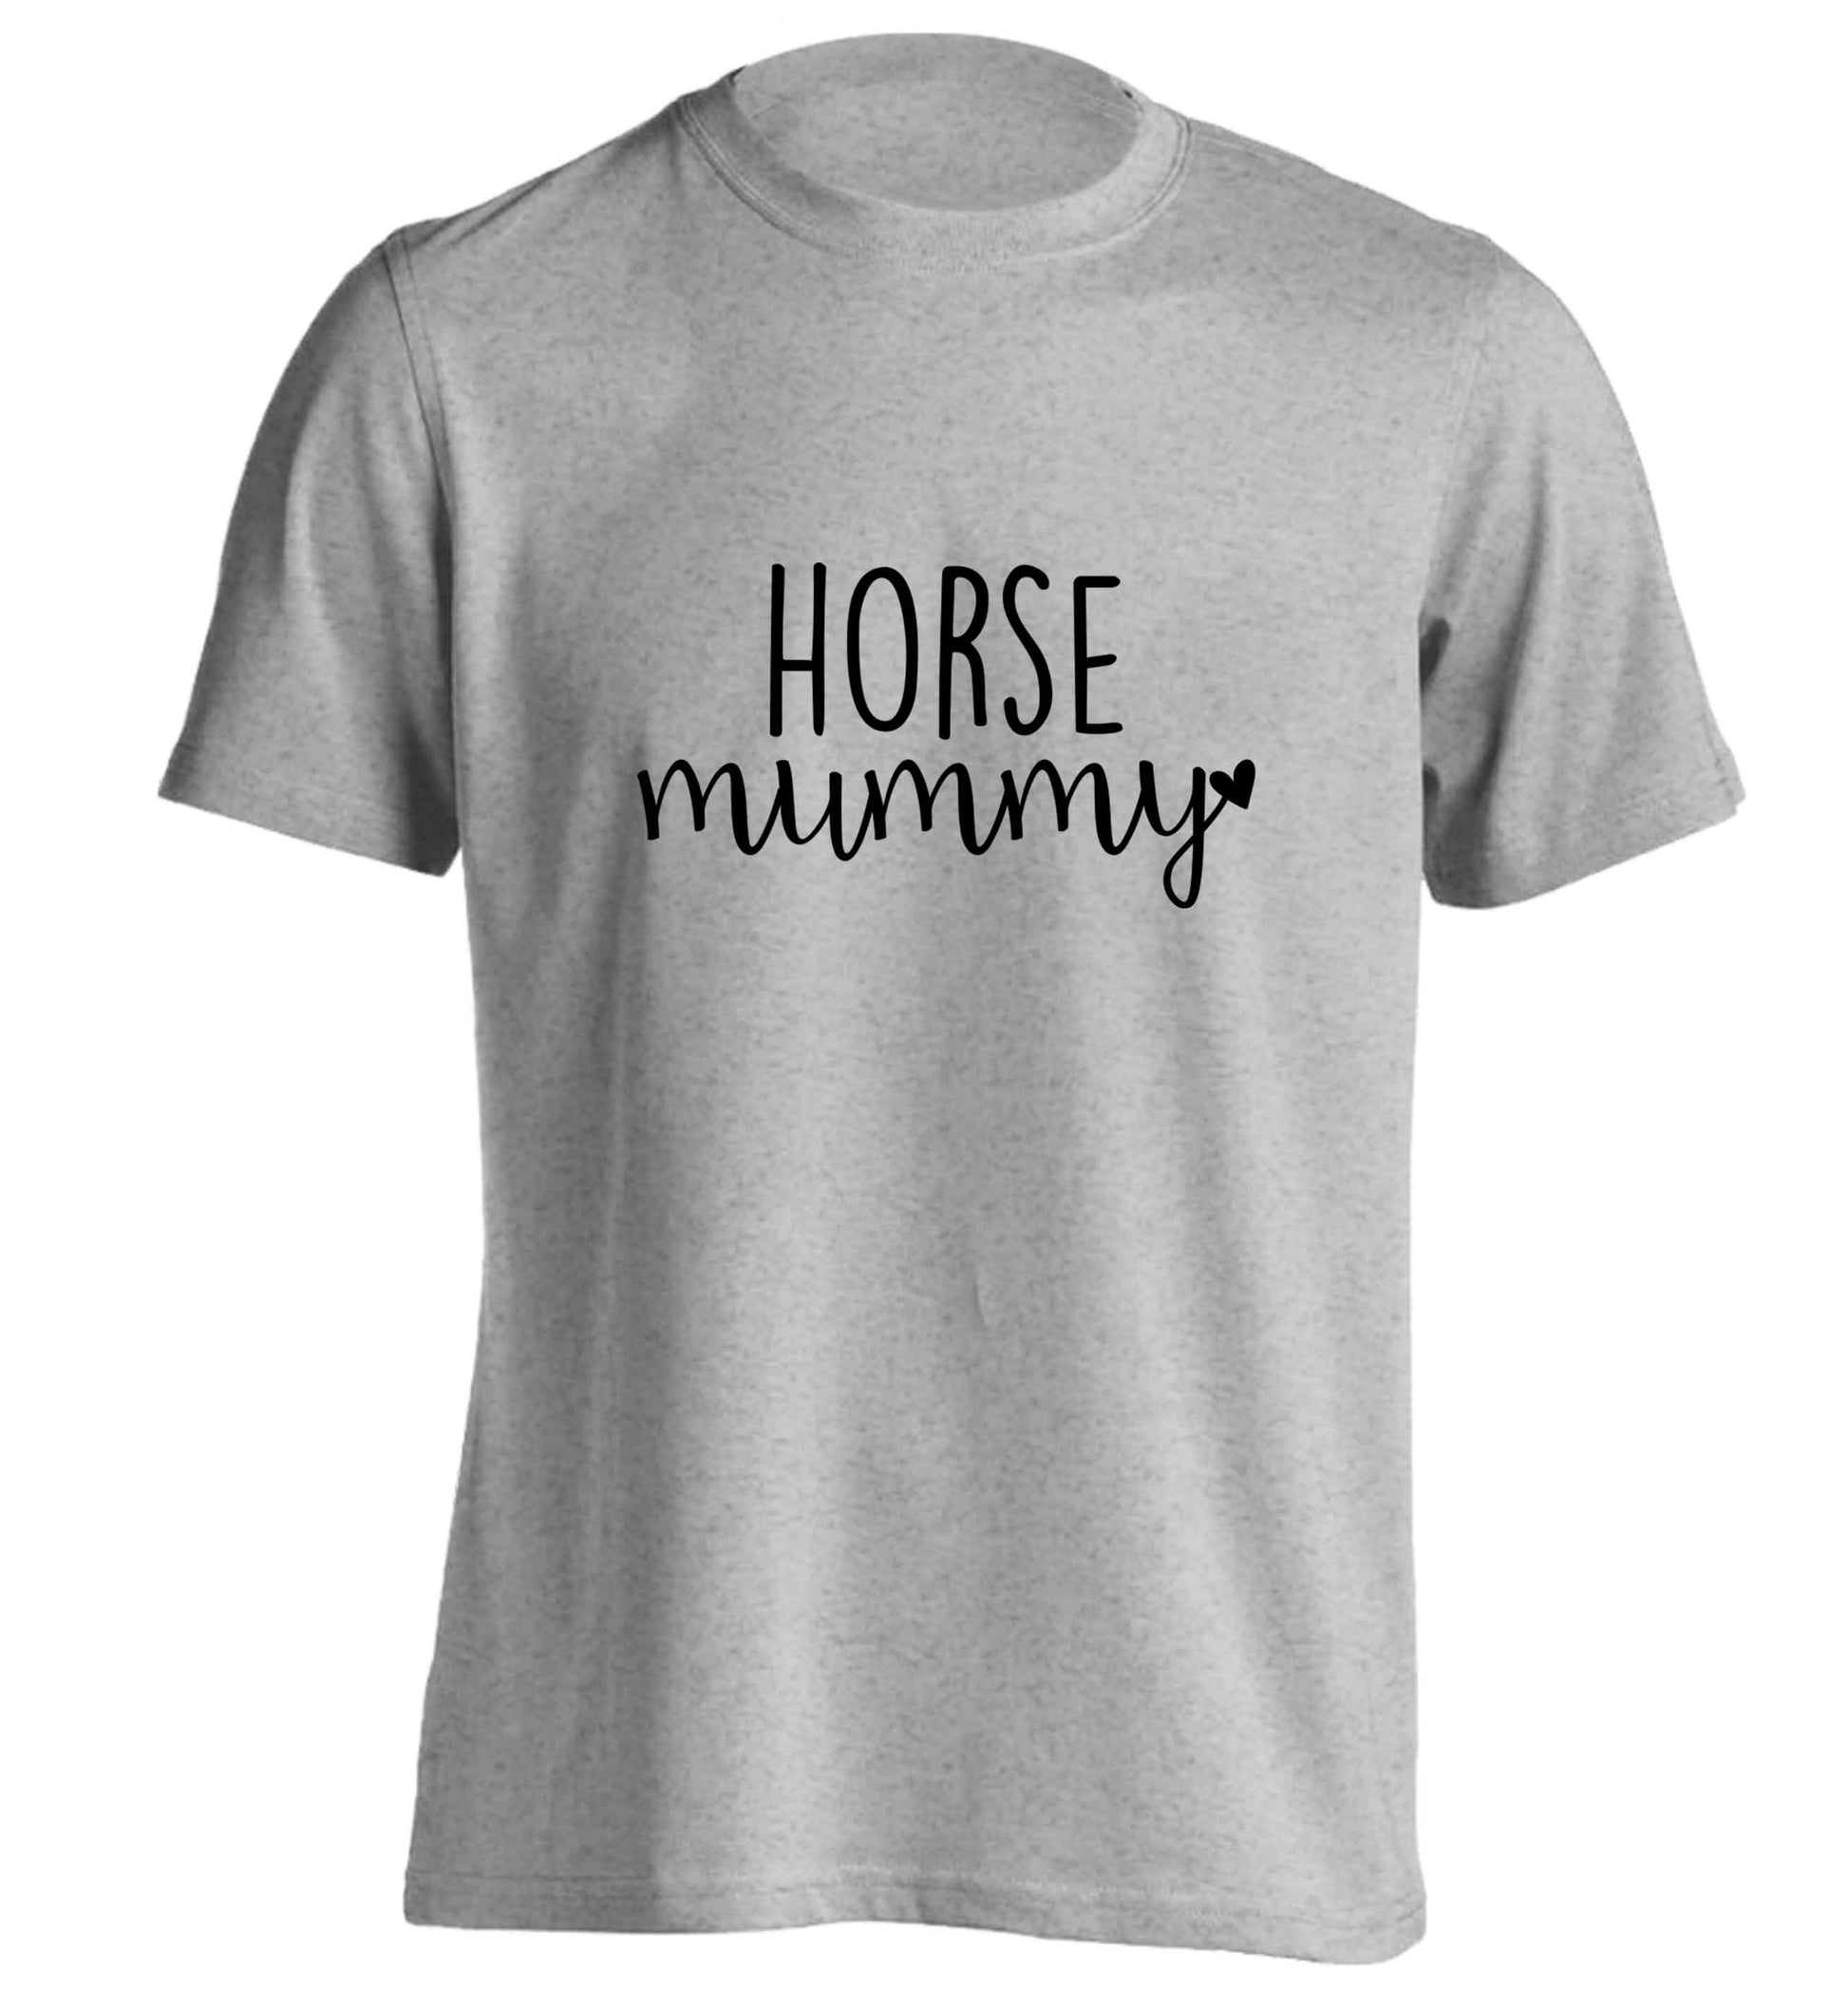 Horse mummy adults unisex grey Tshirt 2XL